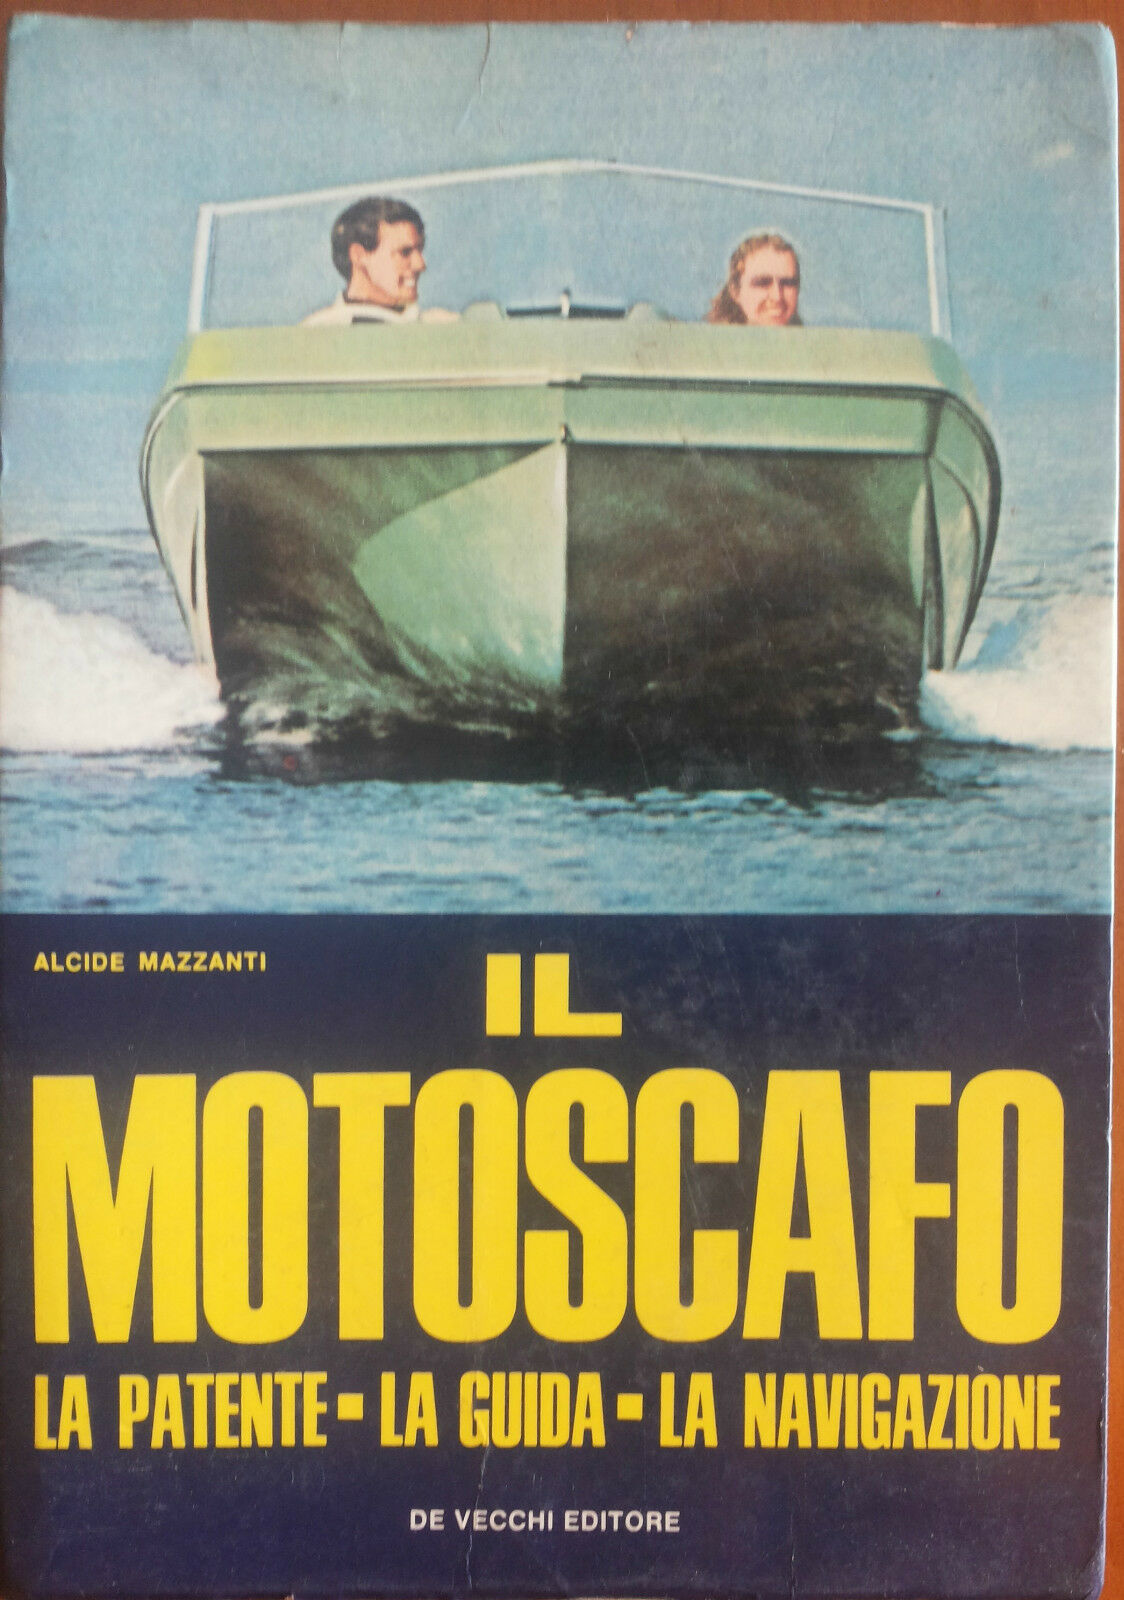 Il motoscafo - Alcide Mazzanti - De Vecchi,1969 - A